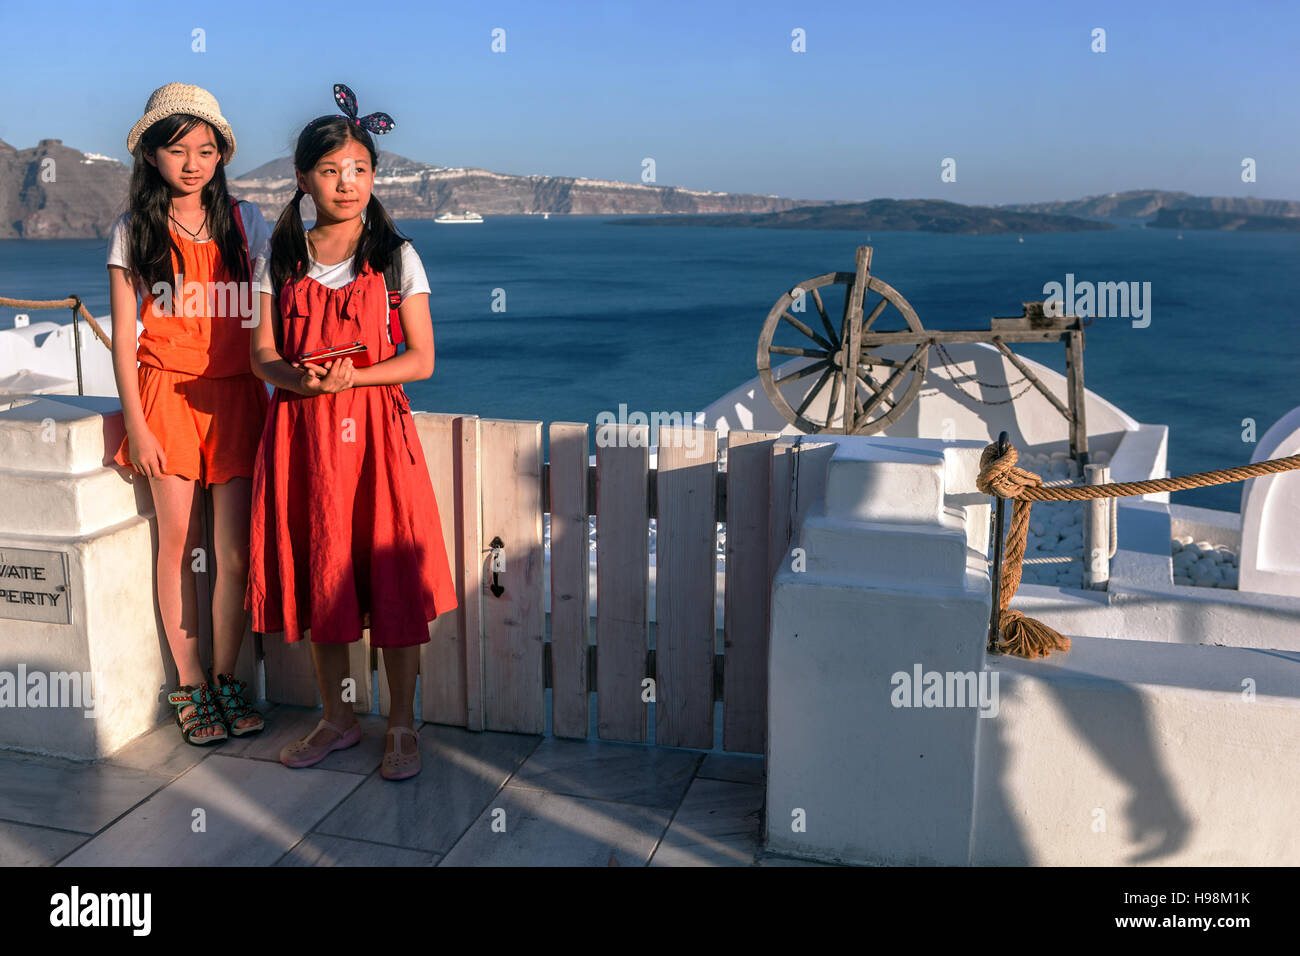 Zwei Asiaten, Teenager, Mädchen Oia Santorini Touristen griechische Insel, Griechenland Inseln Europa Tourismus Griechenland Urlauber Jugendliche Jugendliche Stockfoto